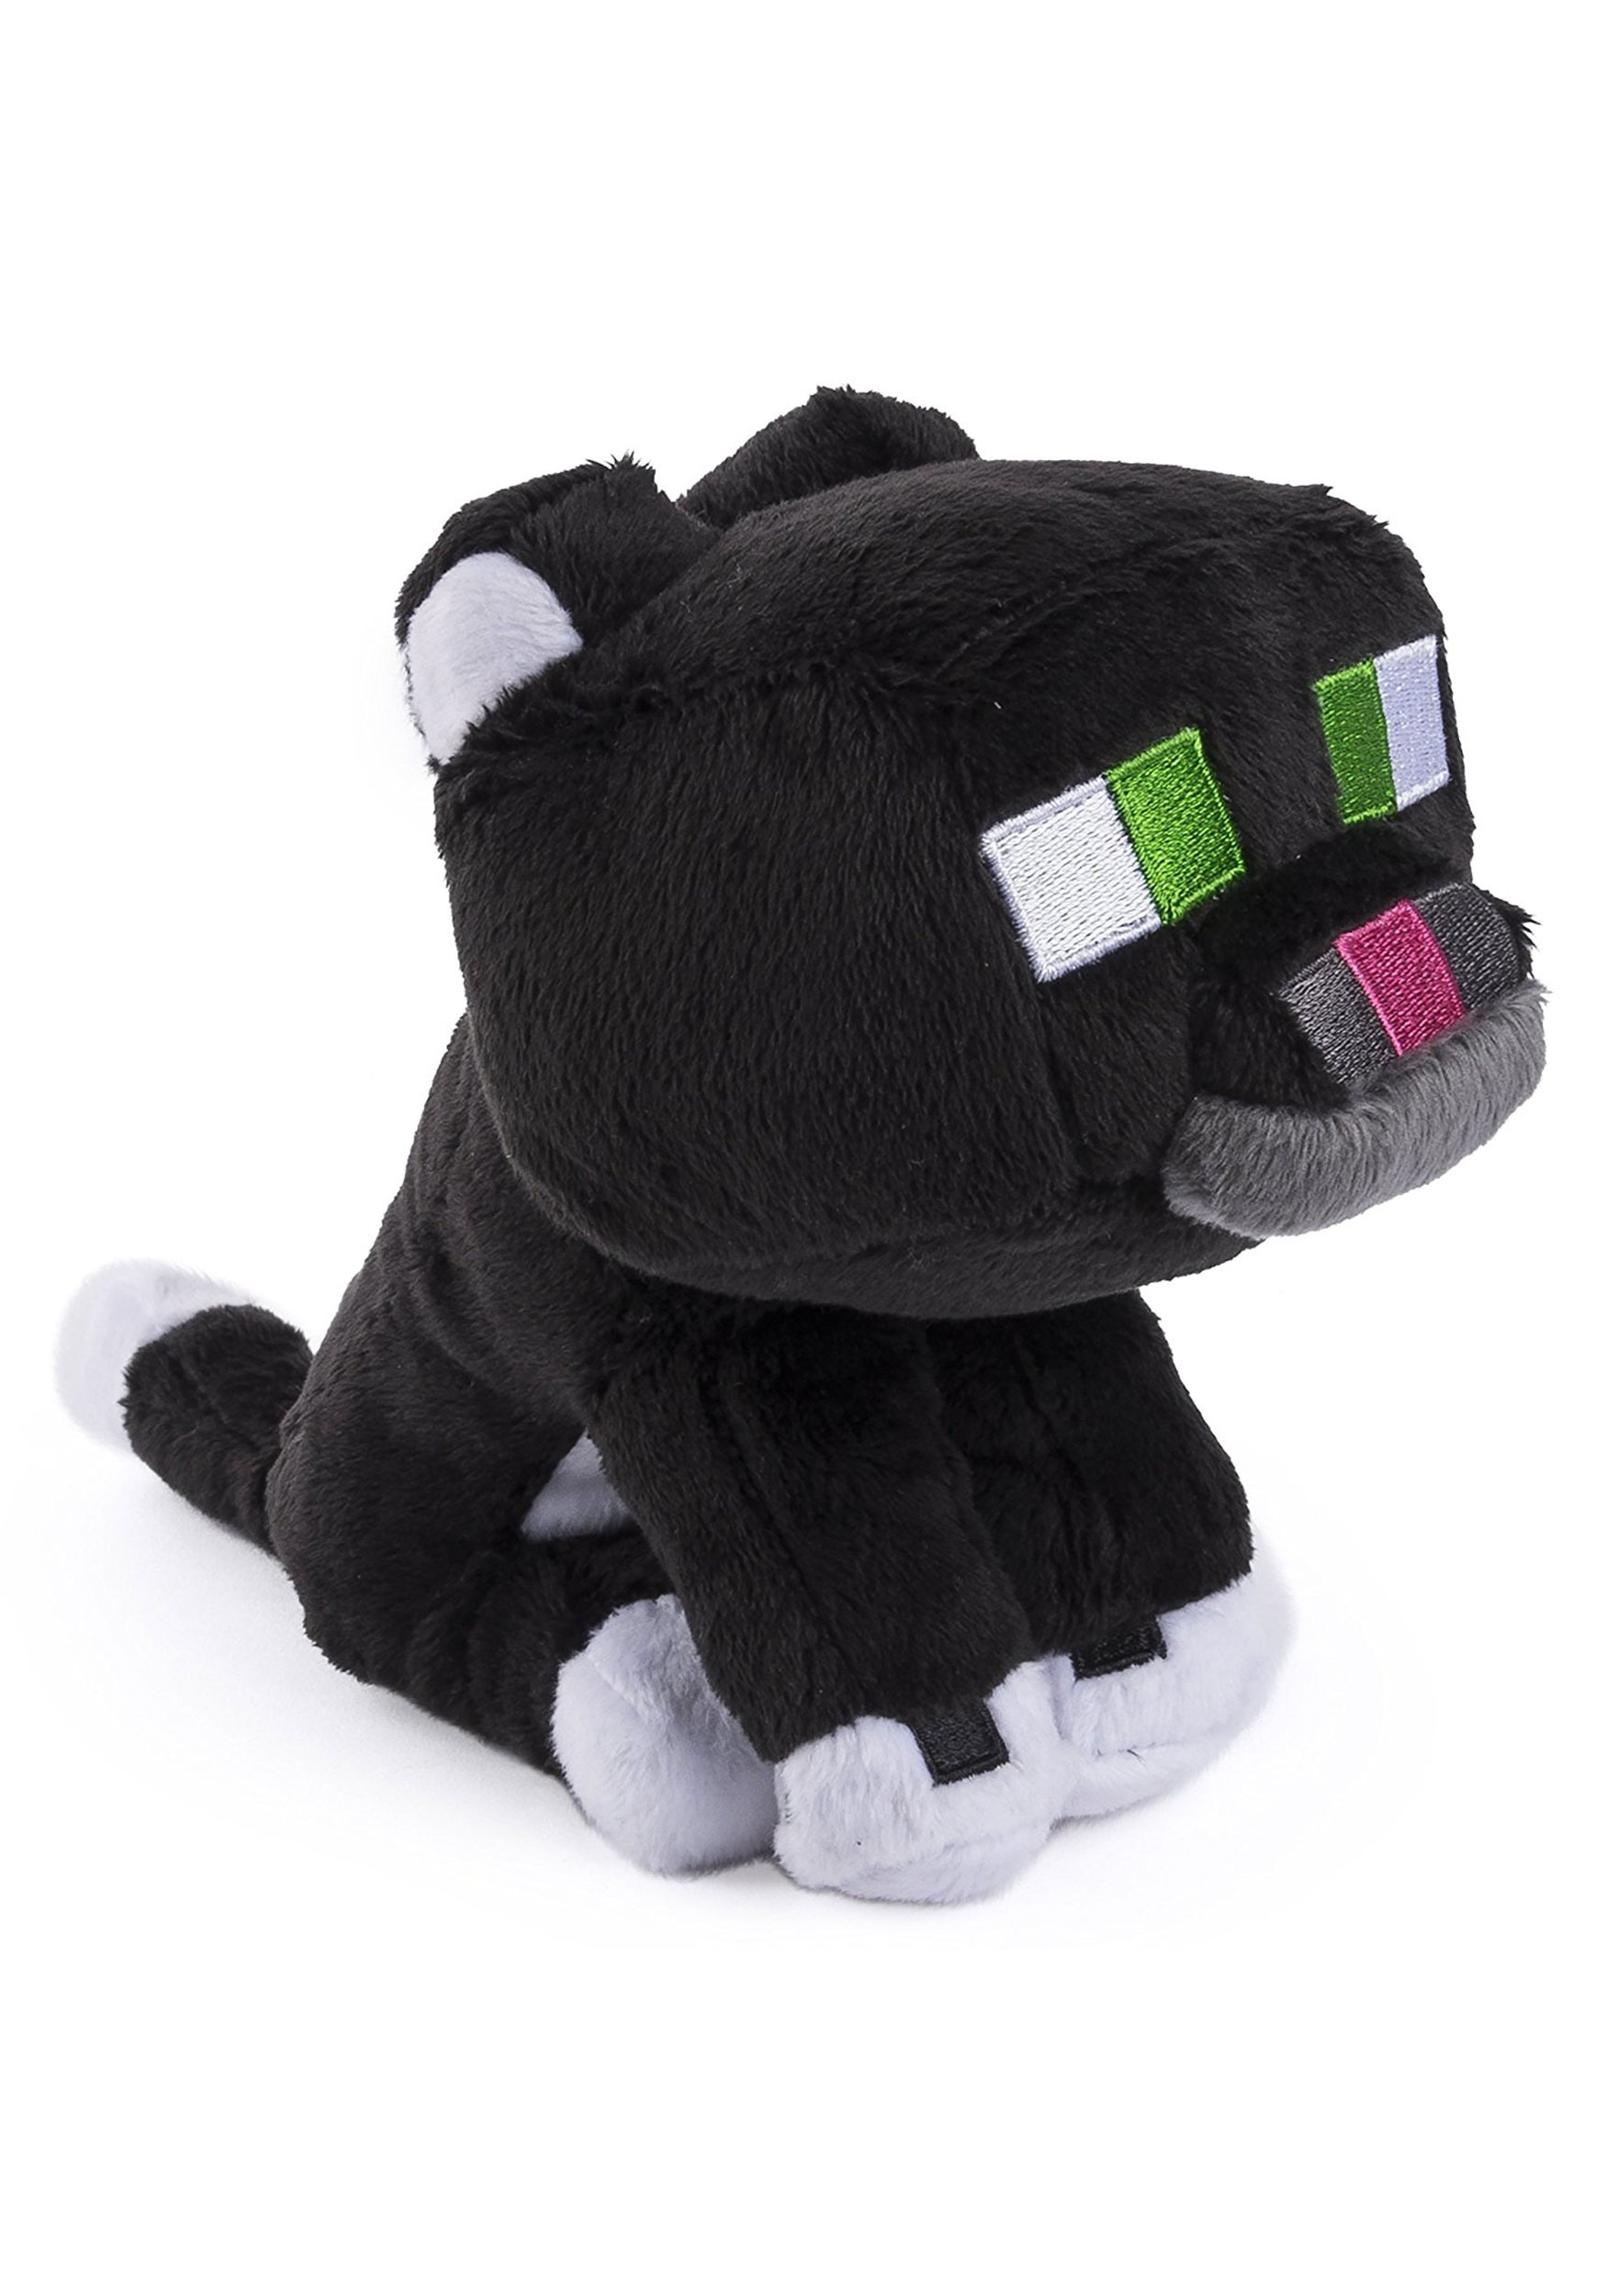 minecraft cat plush toy